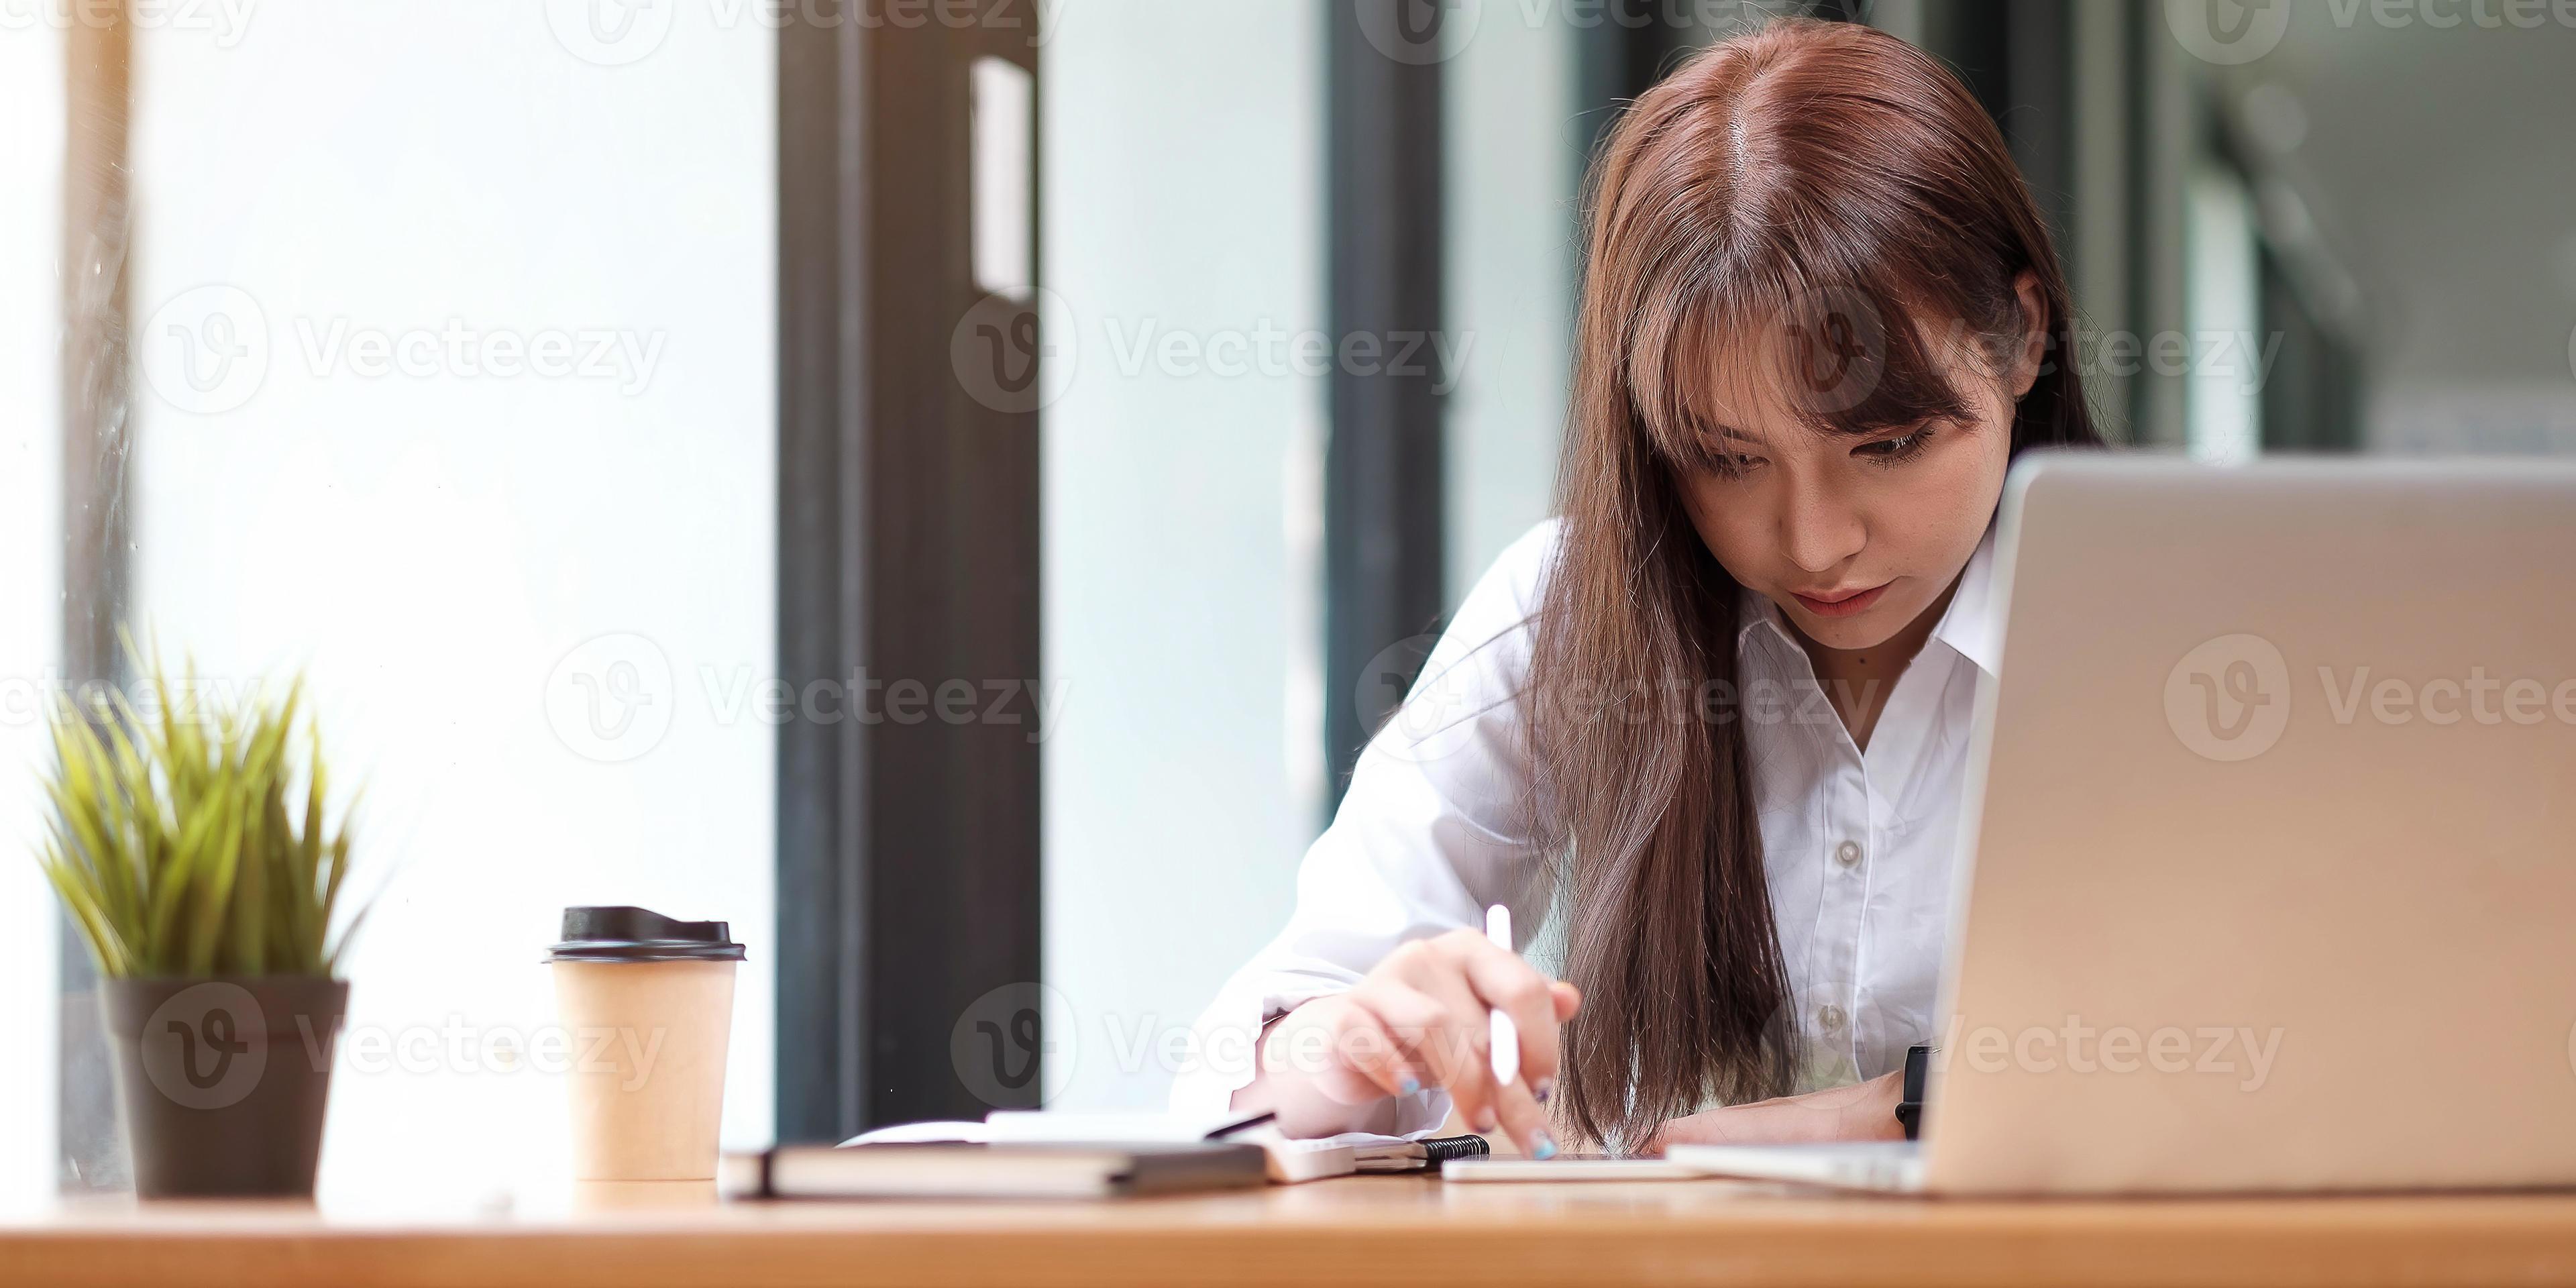 Retrato de una mujer joven y bonita que estudia mientras está sentado en la mesa foto